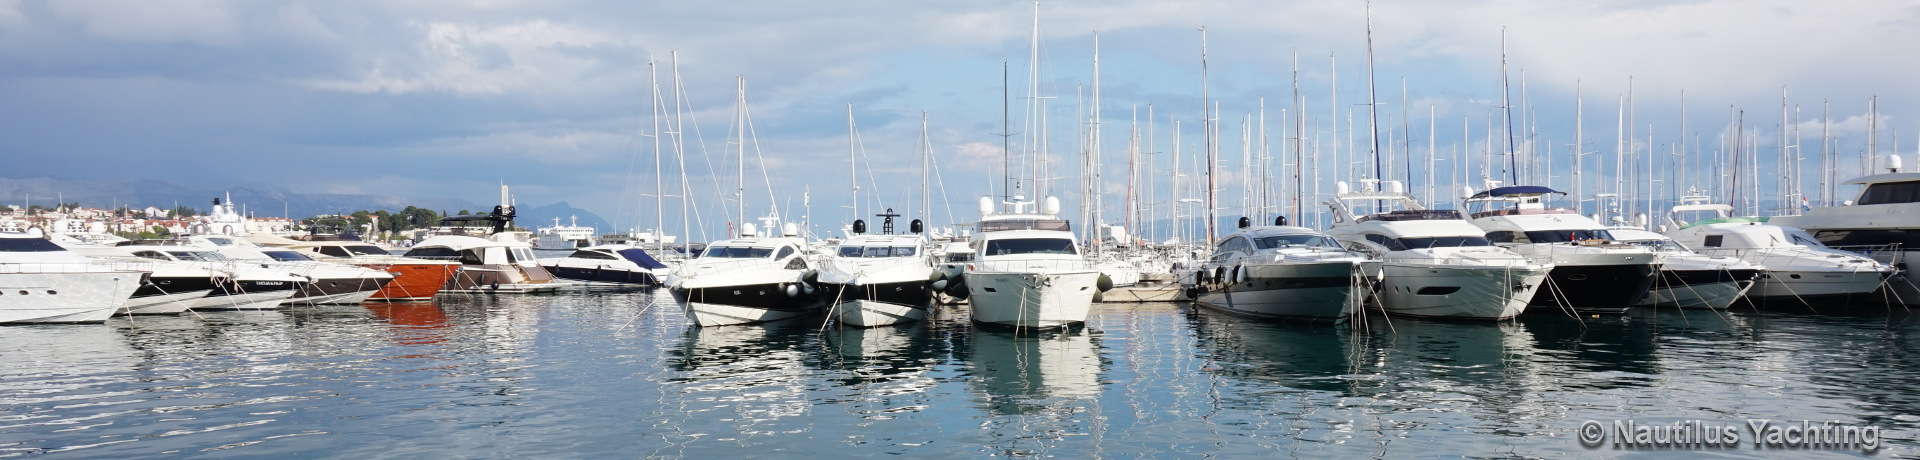 Yacht a motore - noleggio barche in Croazia